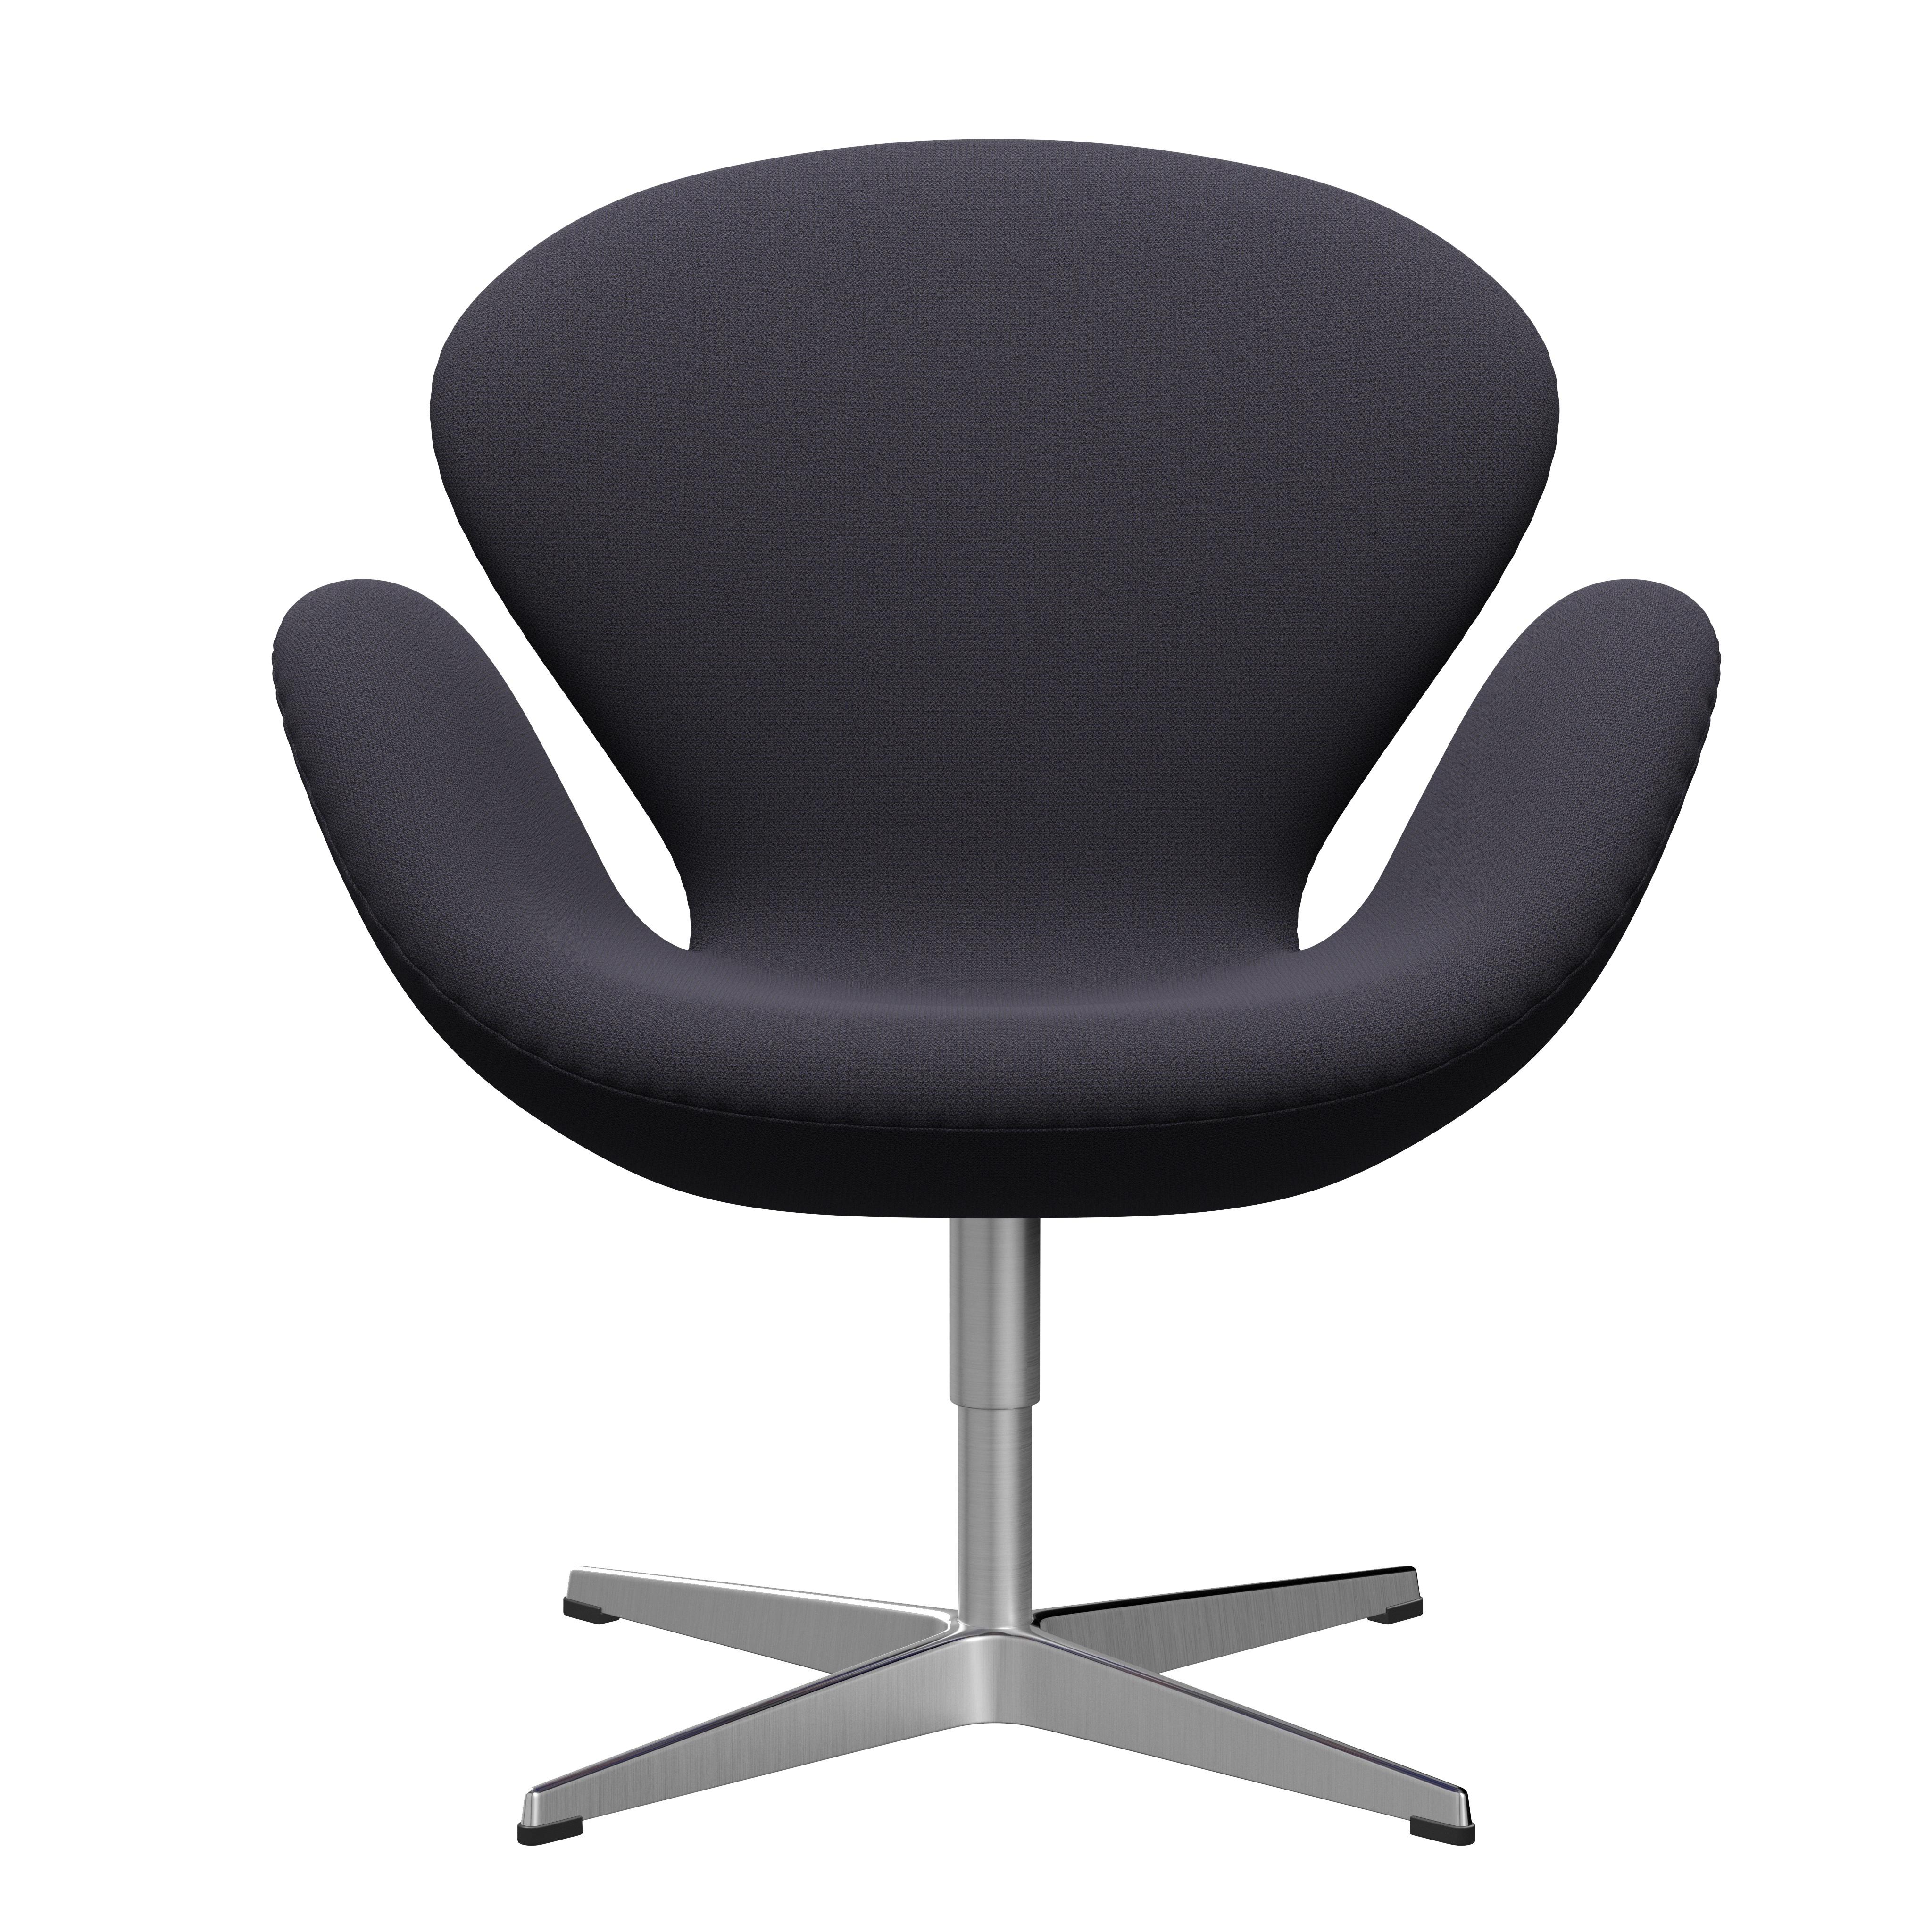 Arne Jacobsen 'Swan' Chair for Fritz Hansen in Fabric Upholstery (Cat. 1) For Sale 6